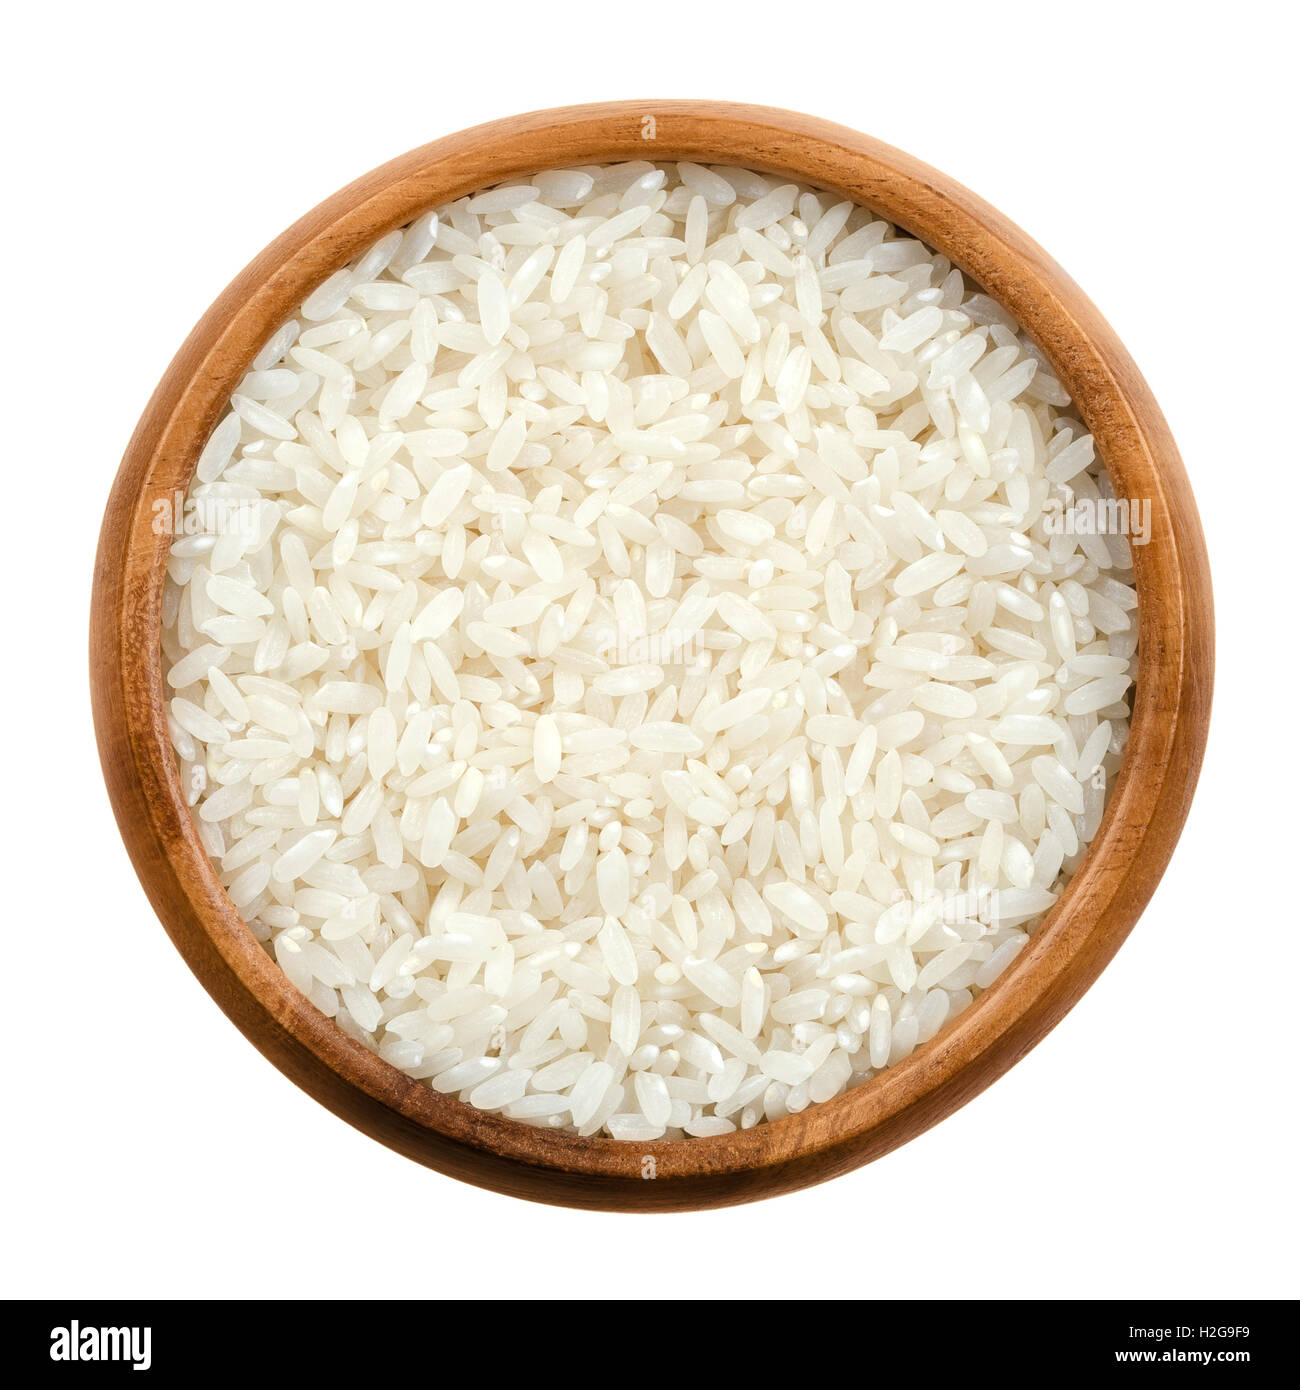 Sushi-Reis in einer Holzschale auf weißem Hintergrund. Weiße kurze Fasern japanischer Reis, die Samen des Grases Oryza Sativa. Stockfoto